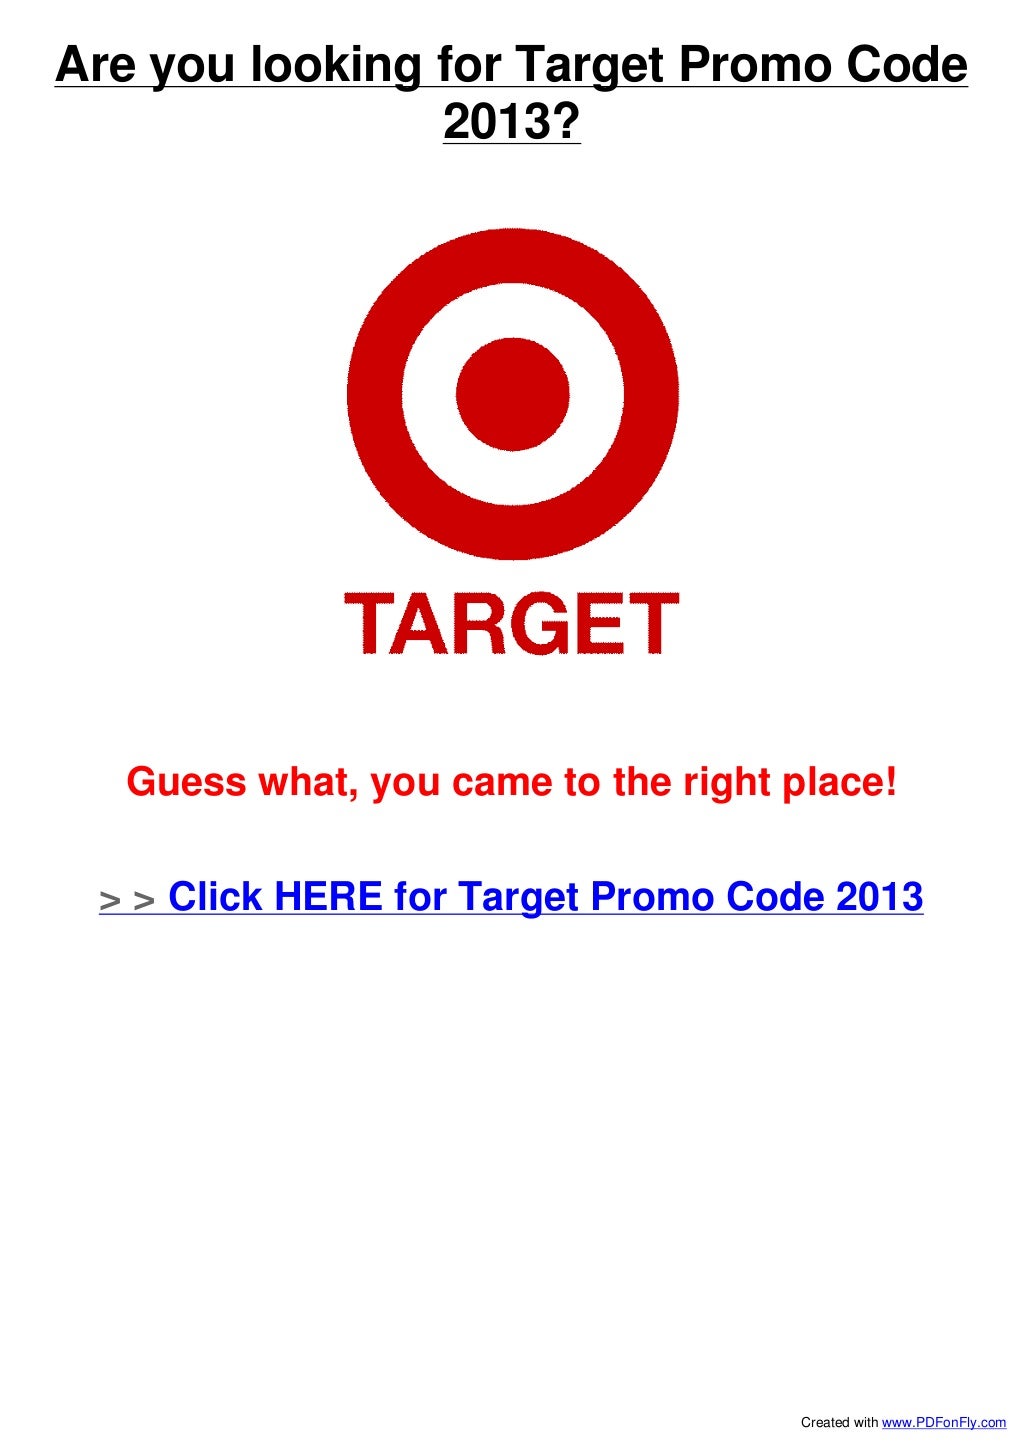 target-promo-code-2013